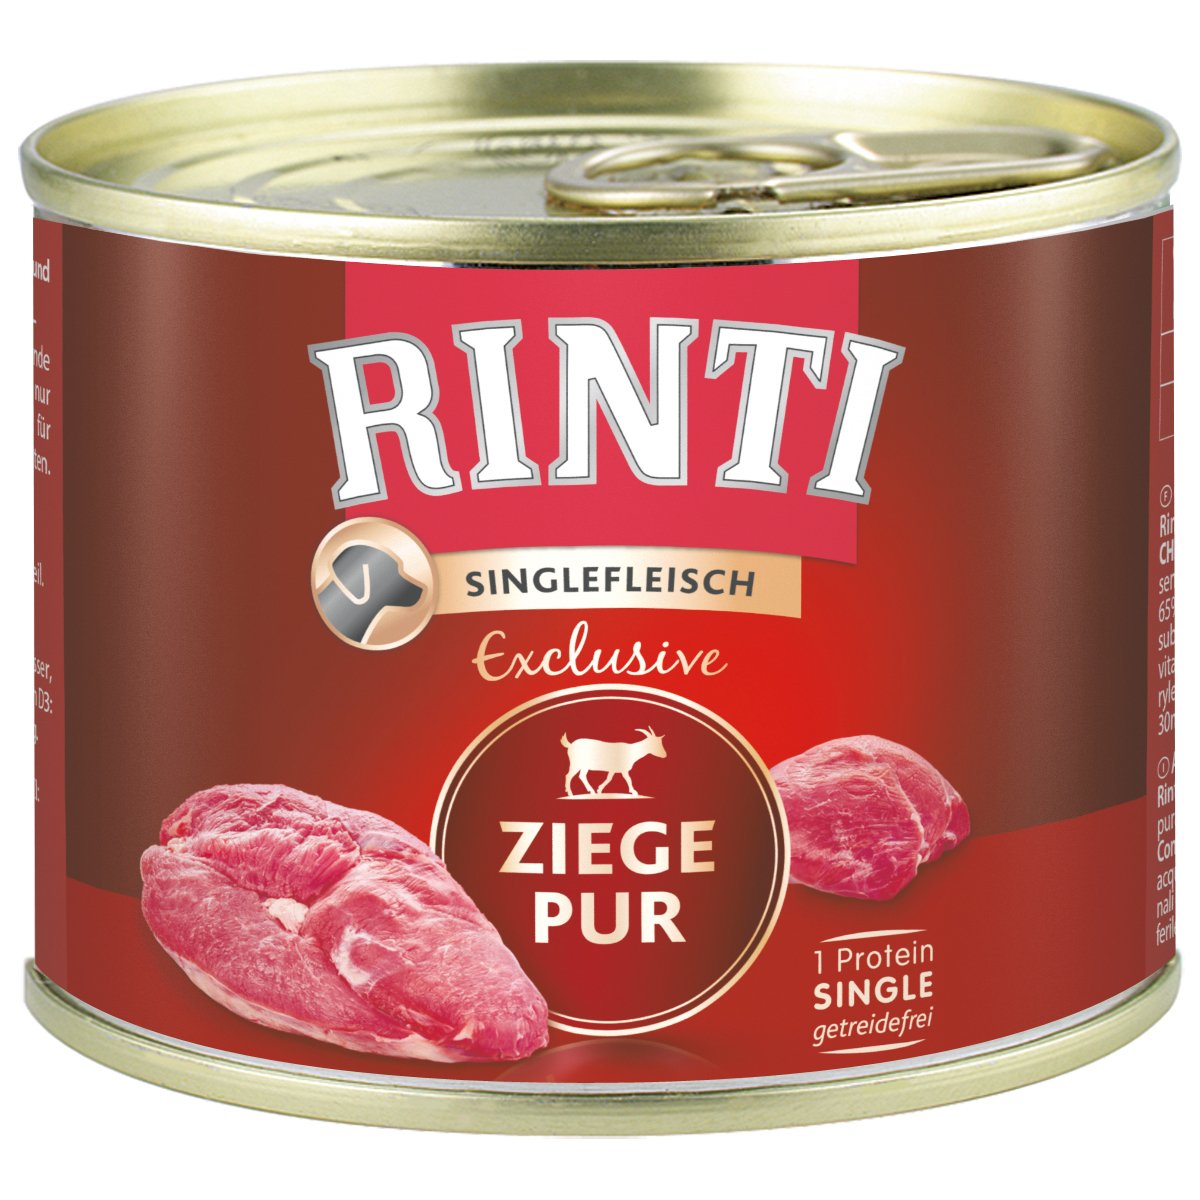 Rinti Singlefleisch Exclusive Ziege pur 24x185g von Rinti